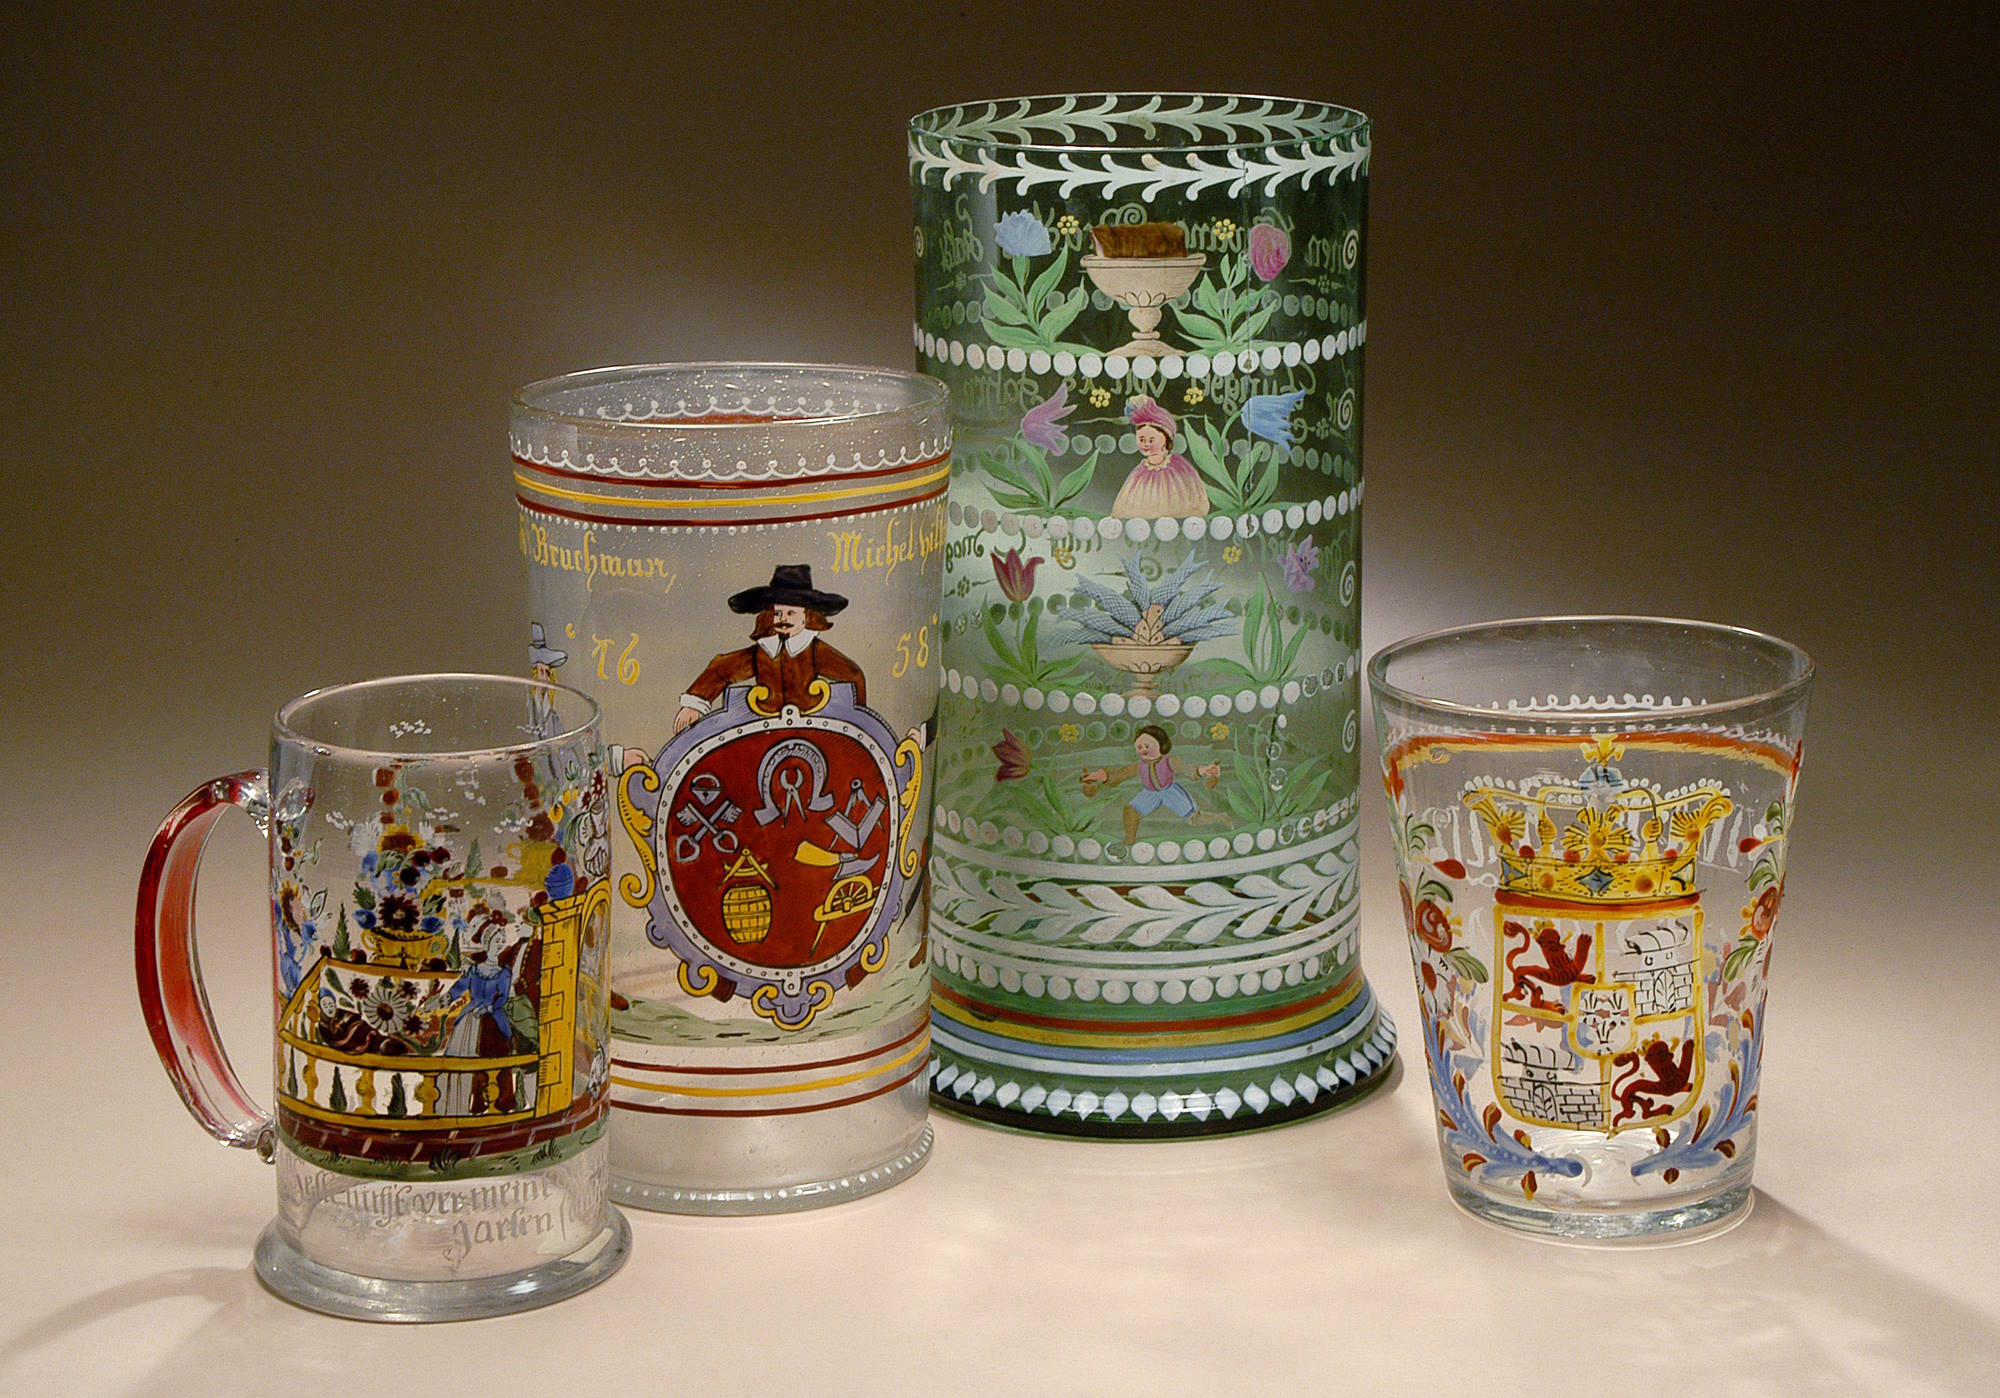 כלים לשתיית בירה עם סמלי אצולה, משפחה ואיגודים מקצועיים מצוירים בצבעי אמאיל, גרמניה, מאות 19-17. צילום: לאוניד פדרול